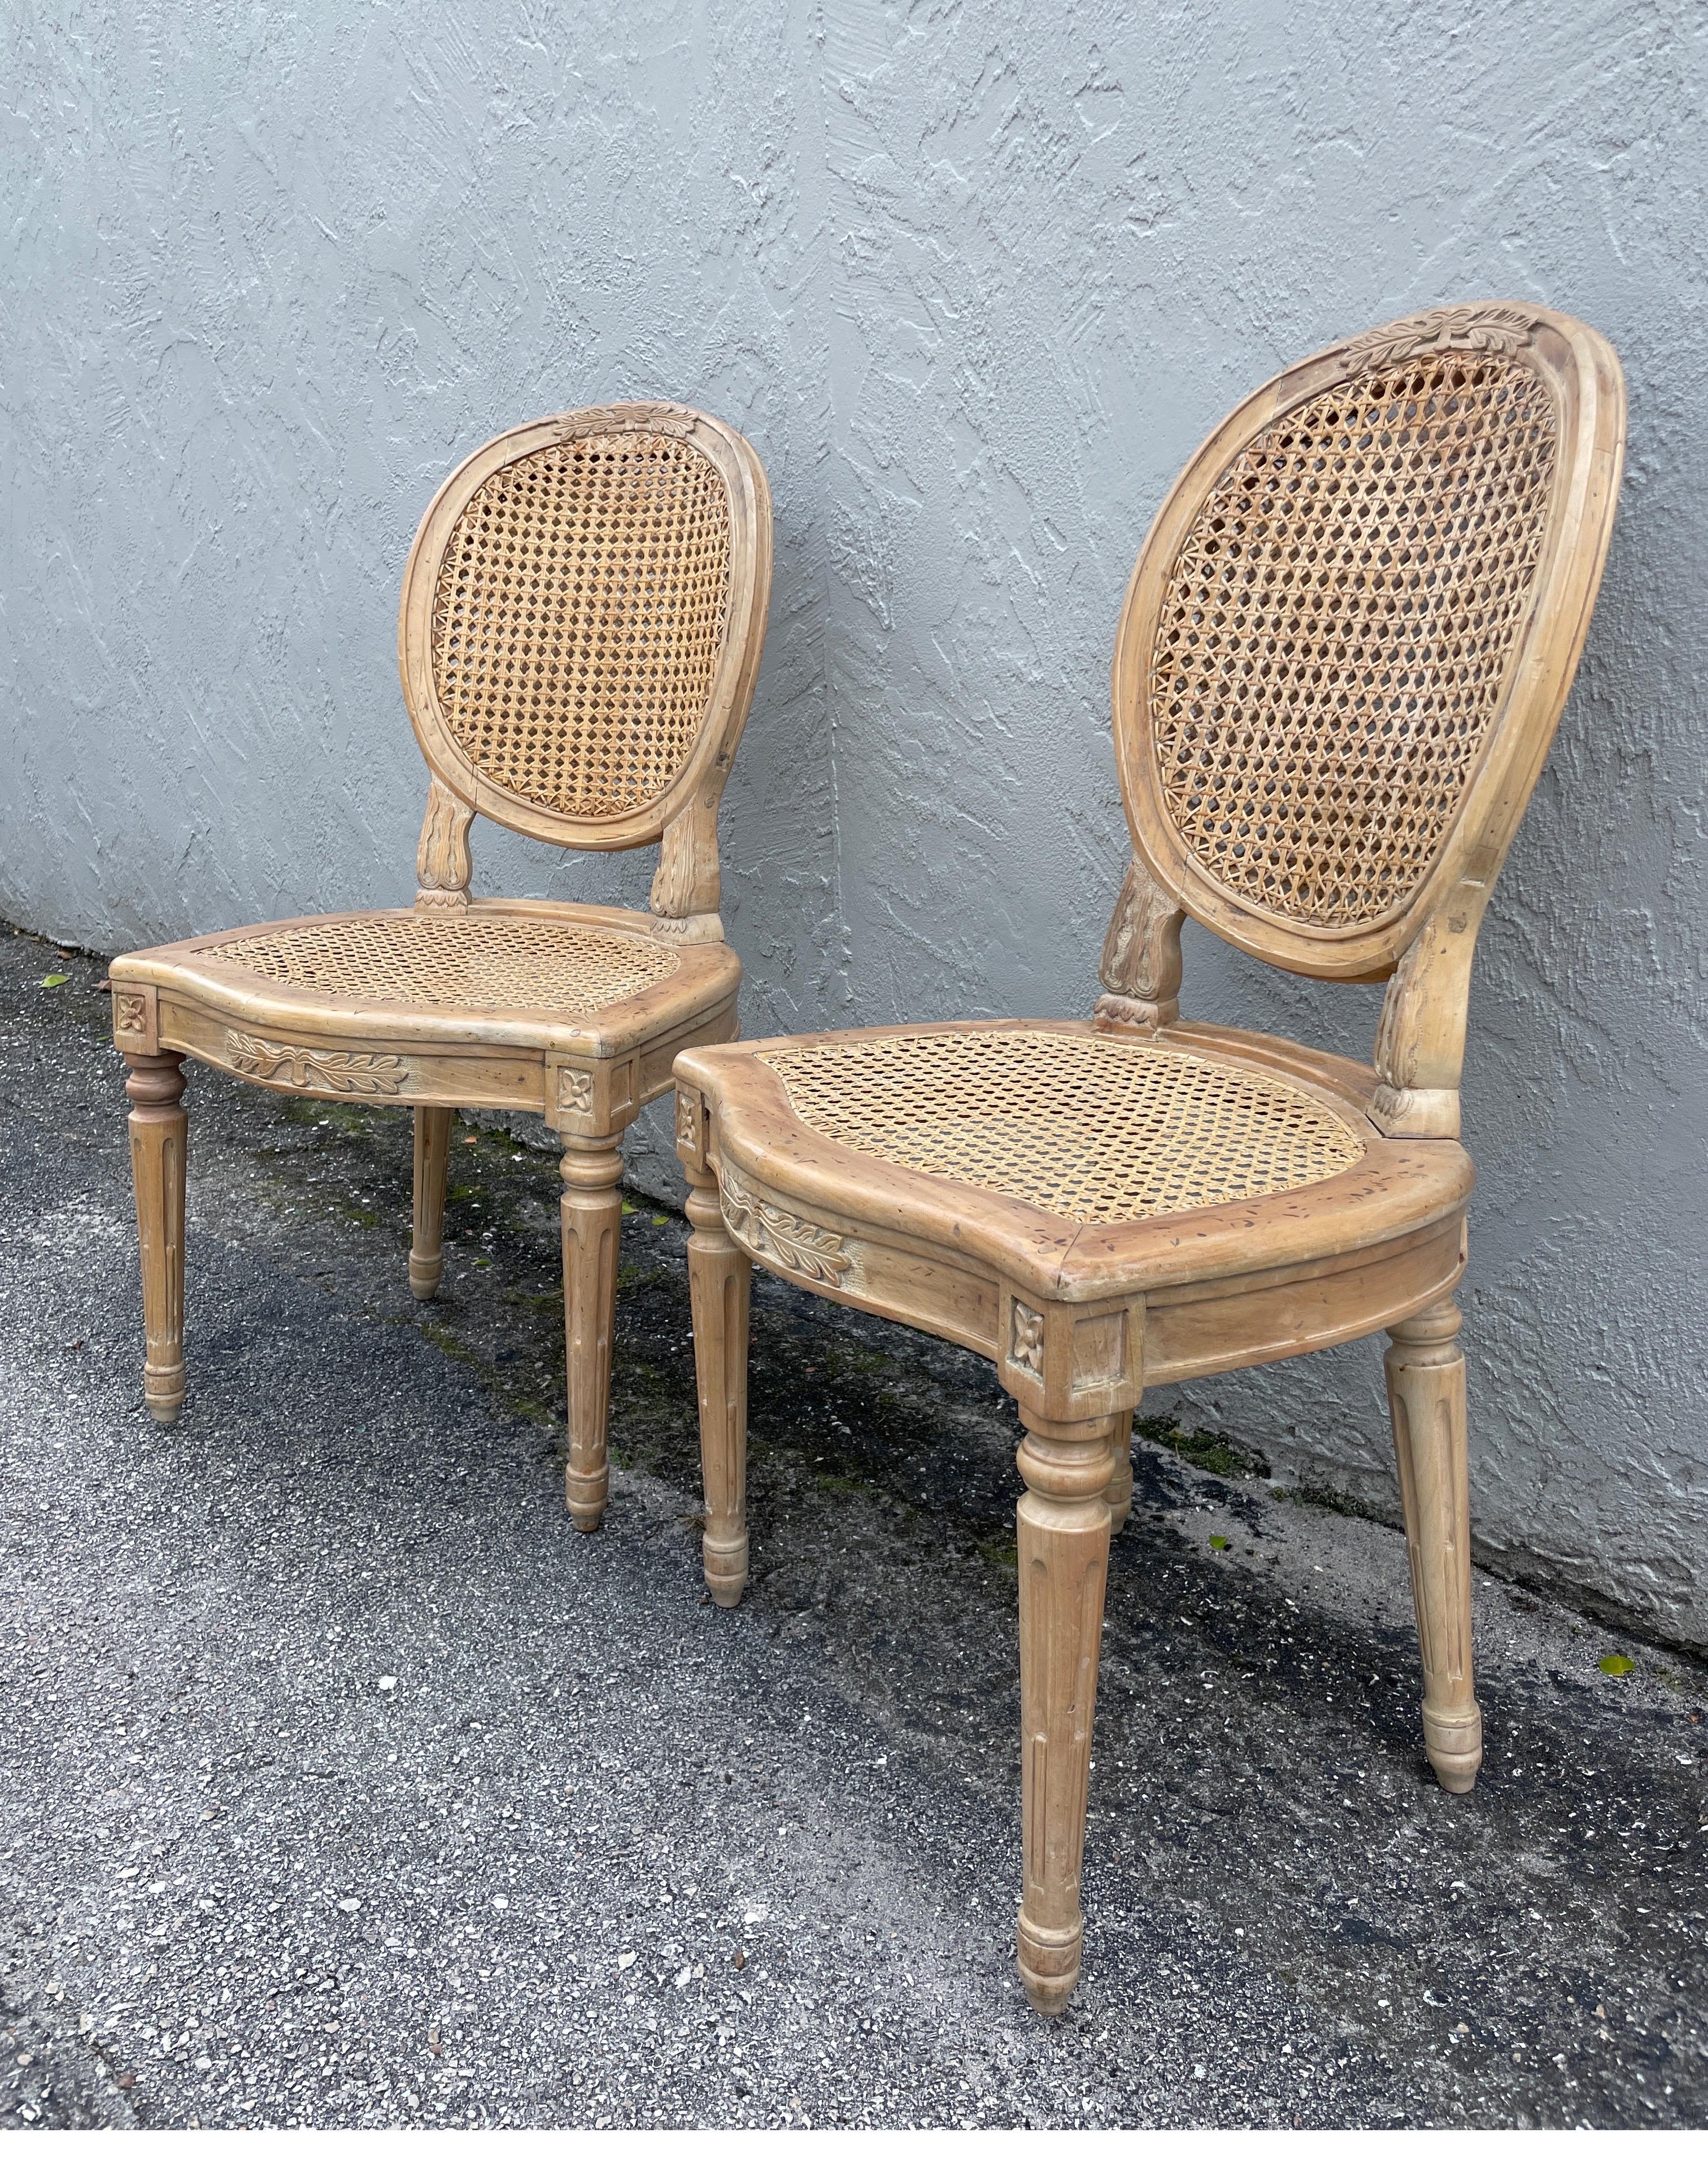 Vintage paire de chaises latérales de style Louis XVI. La finition est d'une couleur naturelle claire avec une légère touche de blanc. Le siège est canné et le dossier ovale est doublement canné à la main. Très bien construit par des artisans